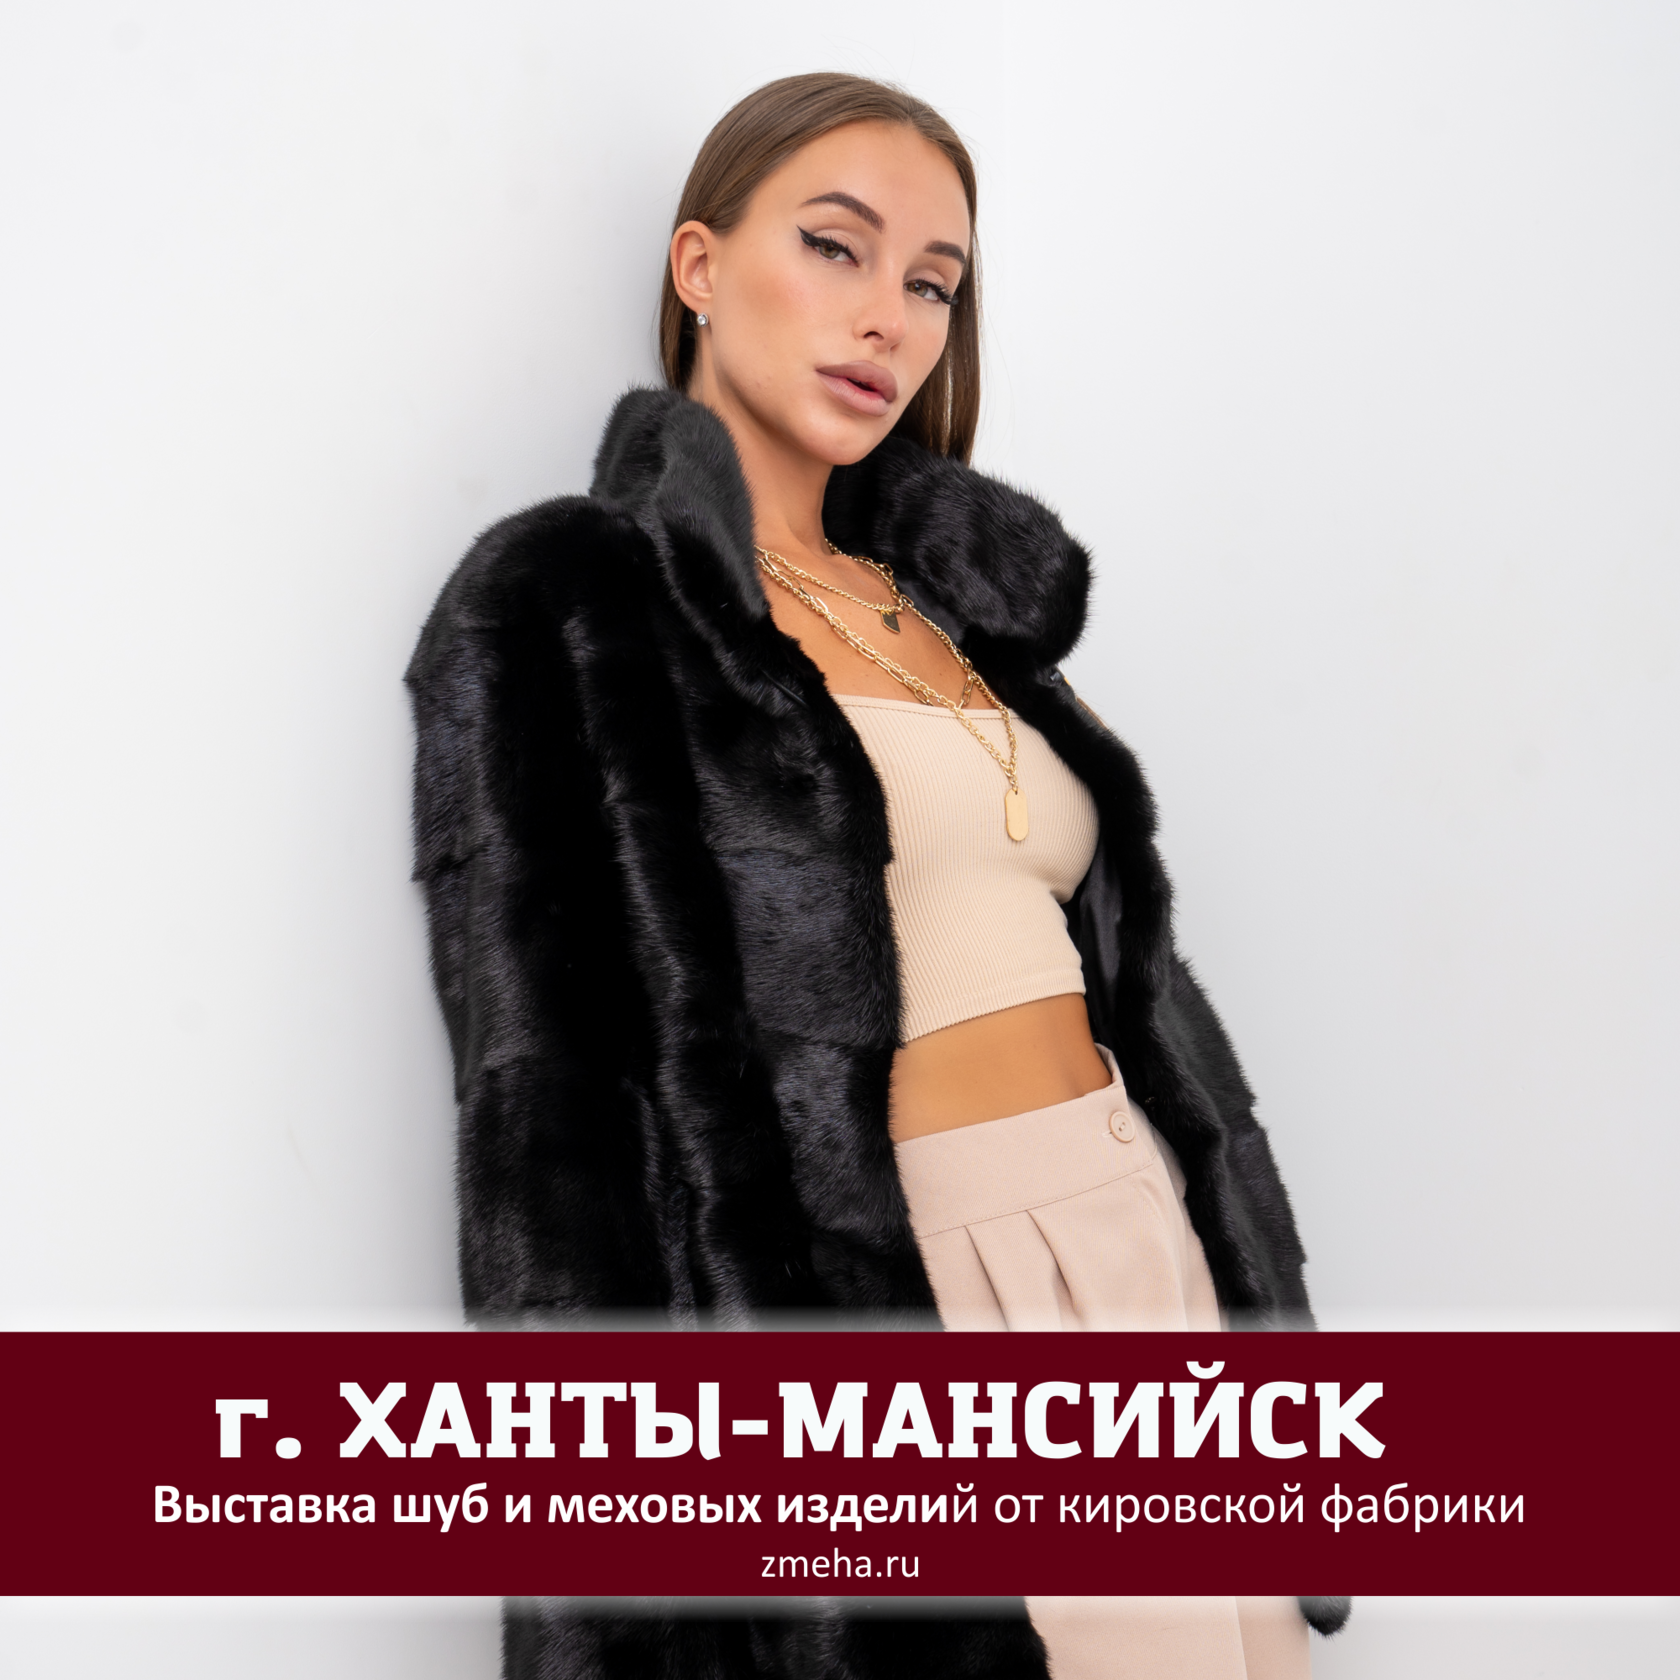 Купить шубу в Ханты-Мансийске на выставке от кировской меховой компании